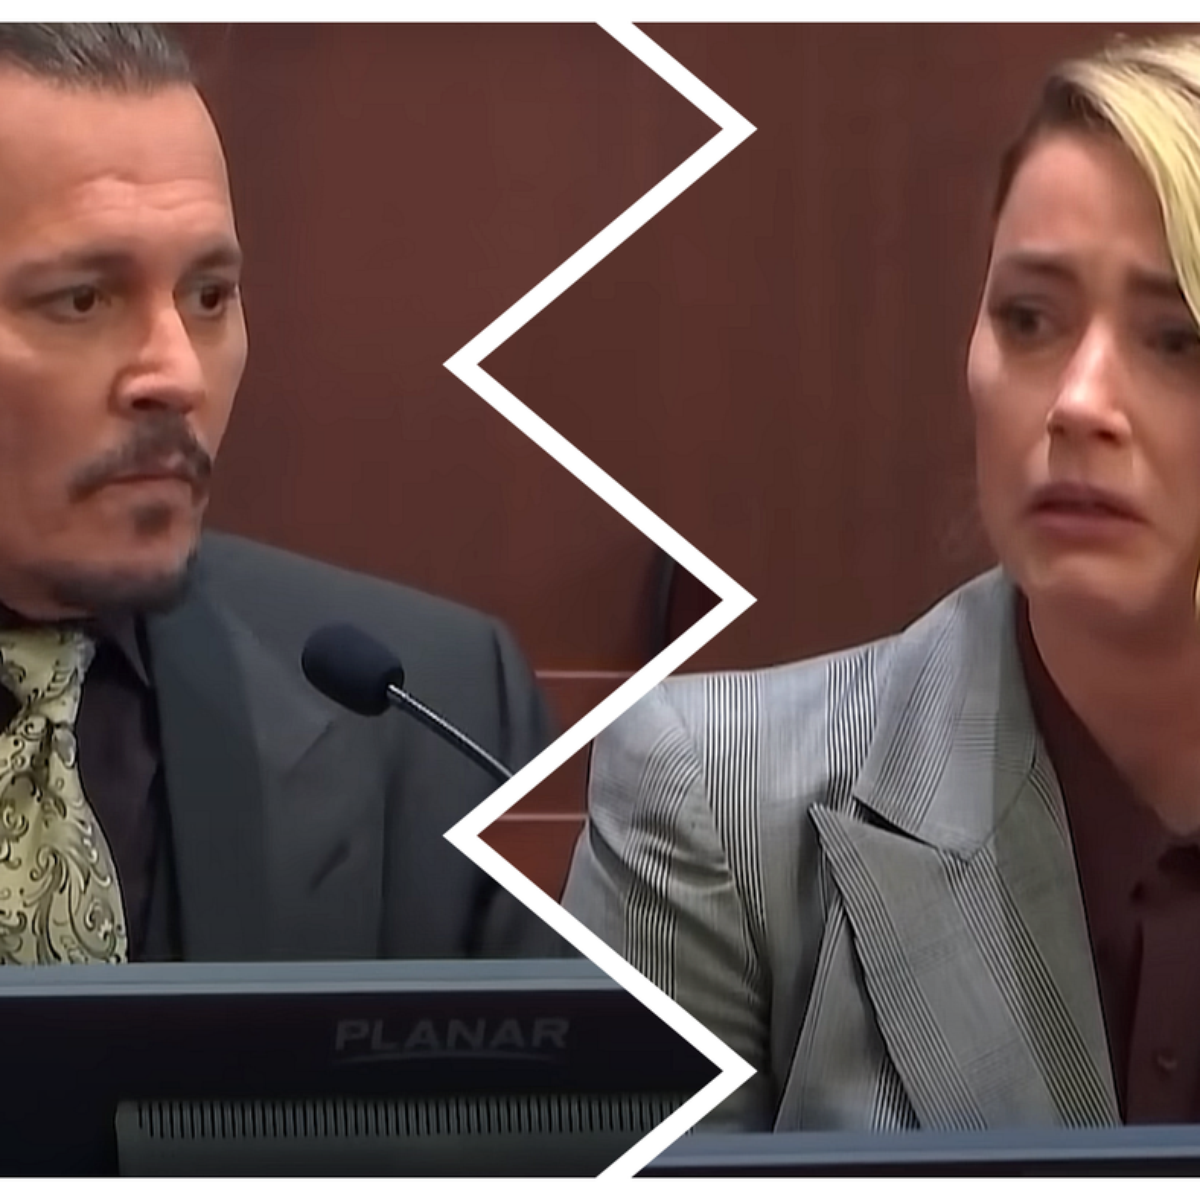 Johnny Depp x Amber Heard: Documentário de julgamento ganha data de estreia  na Netflix - Metropolitana FM